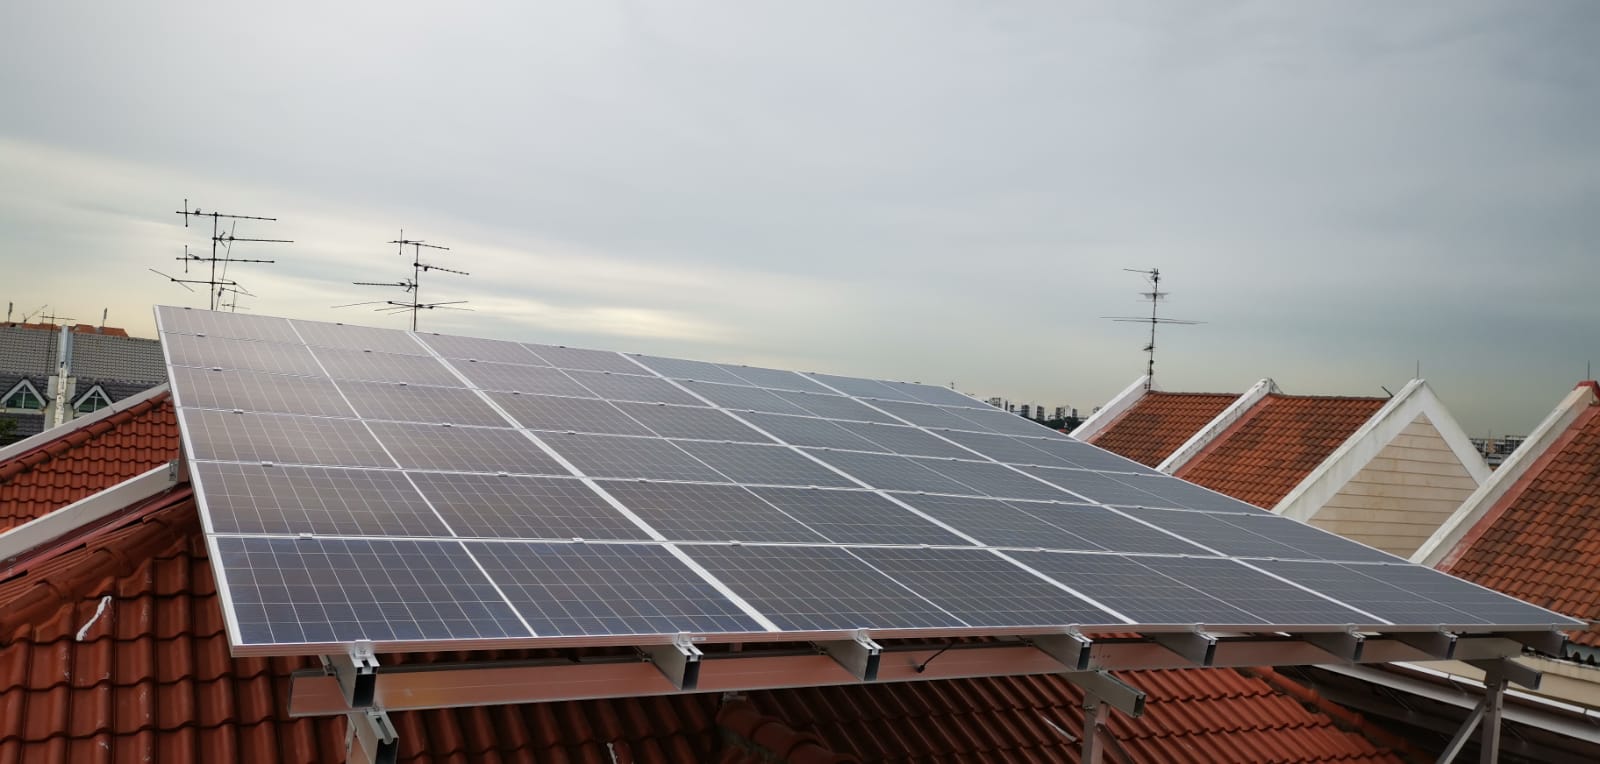 Các cấu trúc lắp đặt năng lượng mặt trời trên mái được lắp đặt tại Singapore vào tháng 10 năm 2020